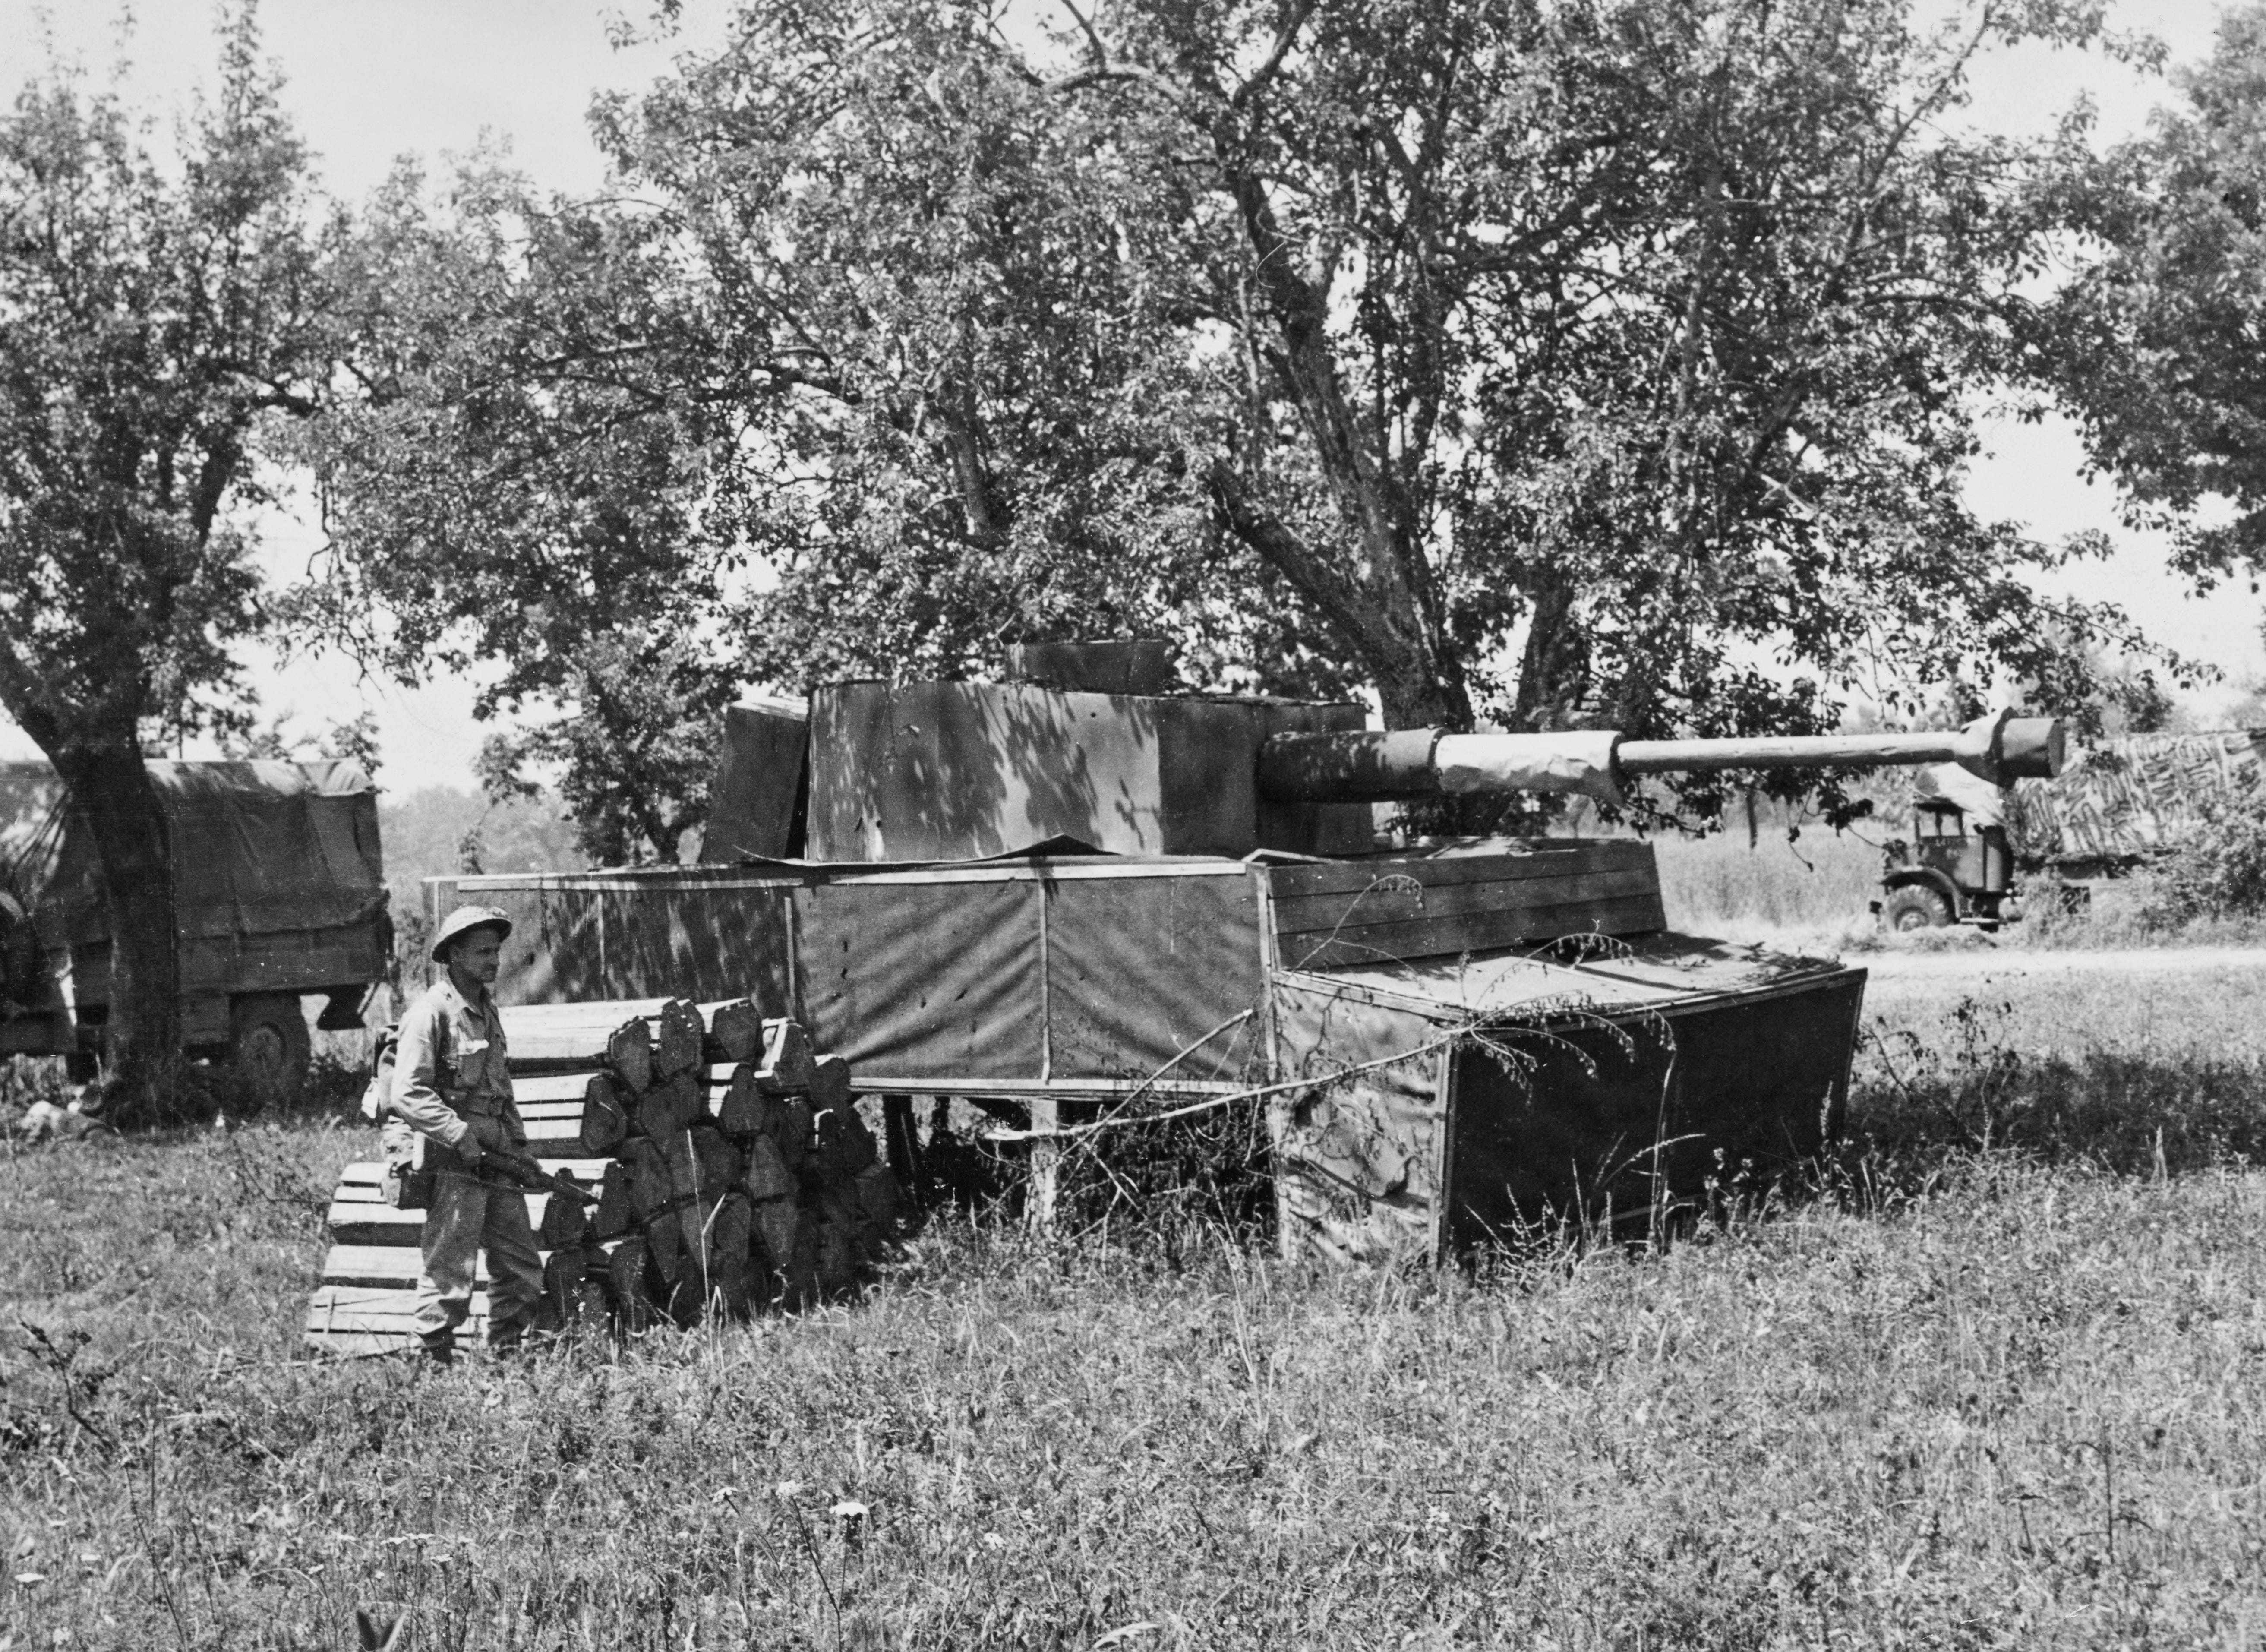 Schütze RA McLaren von der 1. Kanadischen Infanteriedivision, 1. Kanadisches Korps der 8. britischen Armee, untersucht die getarnte Panzer-IV-Panzerattrappe.